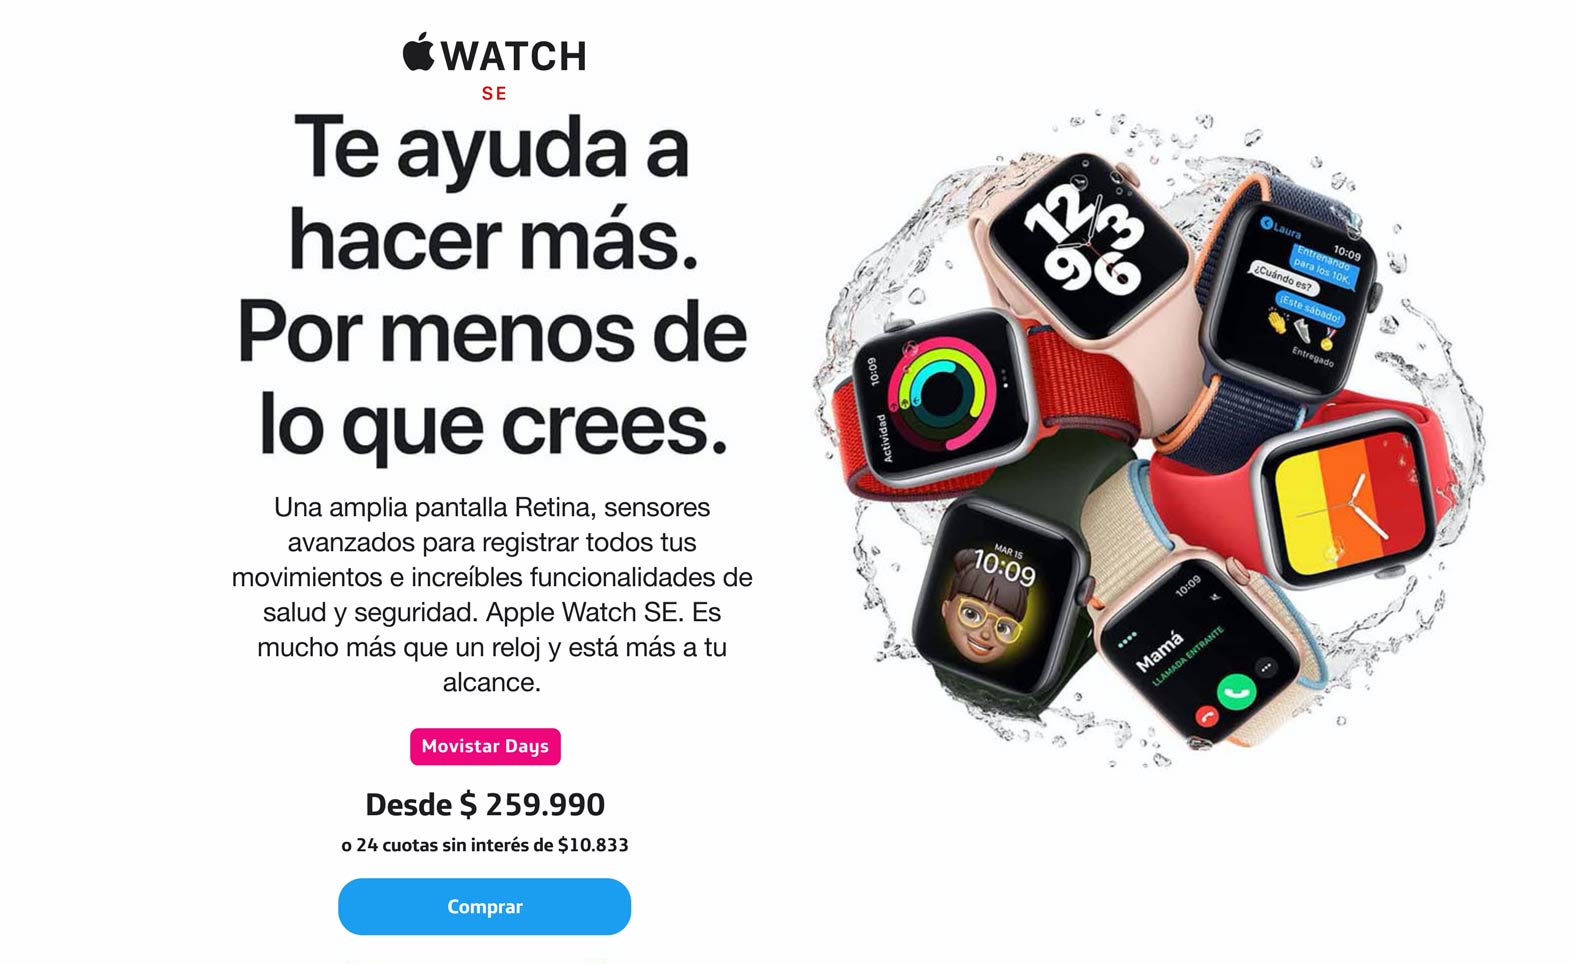 Nuevo Apple Watch SE, te ayuda a hacer, más por menos de lo que crees.